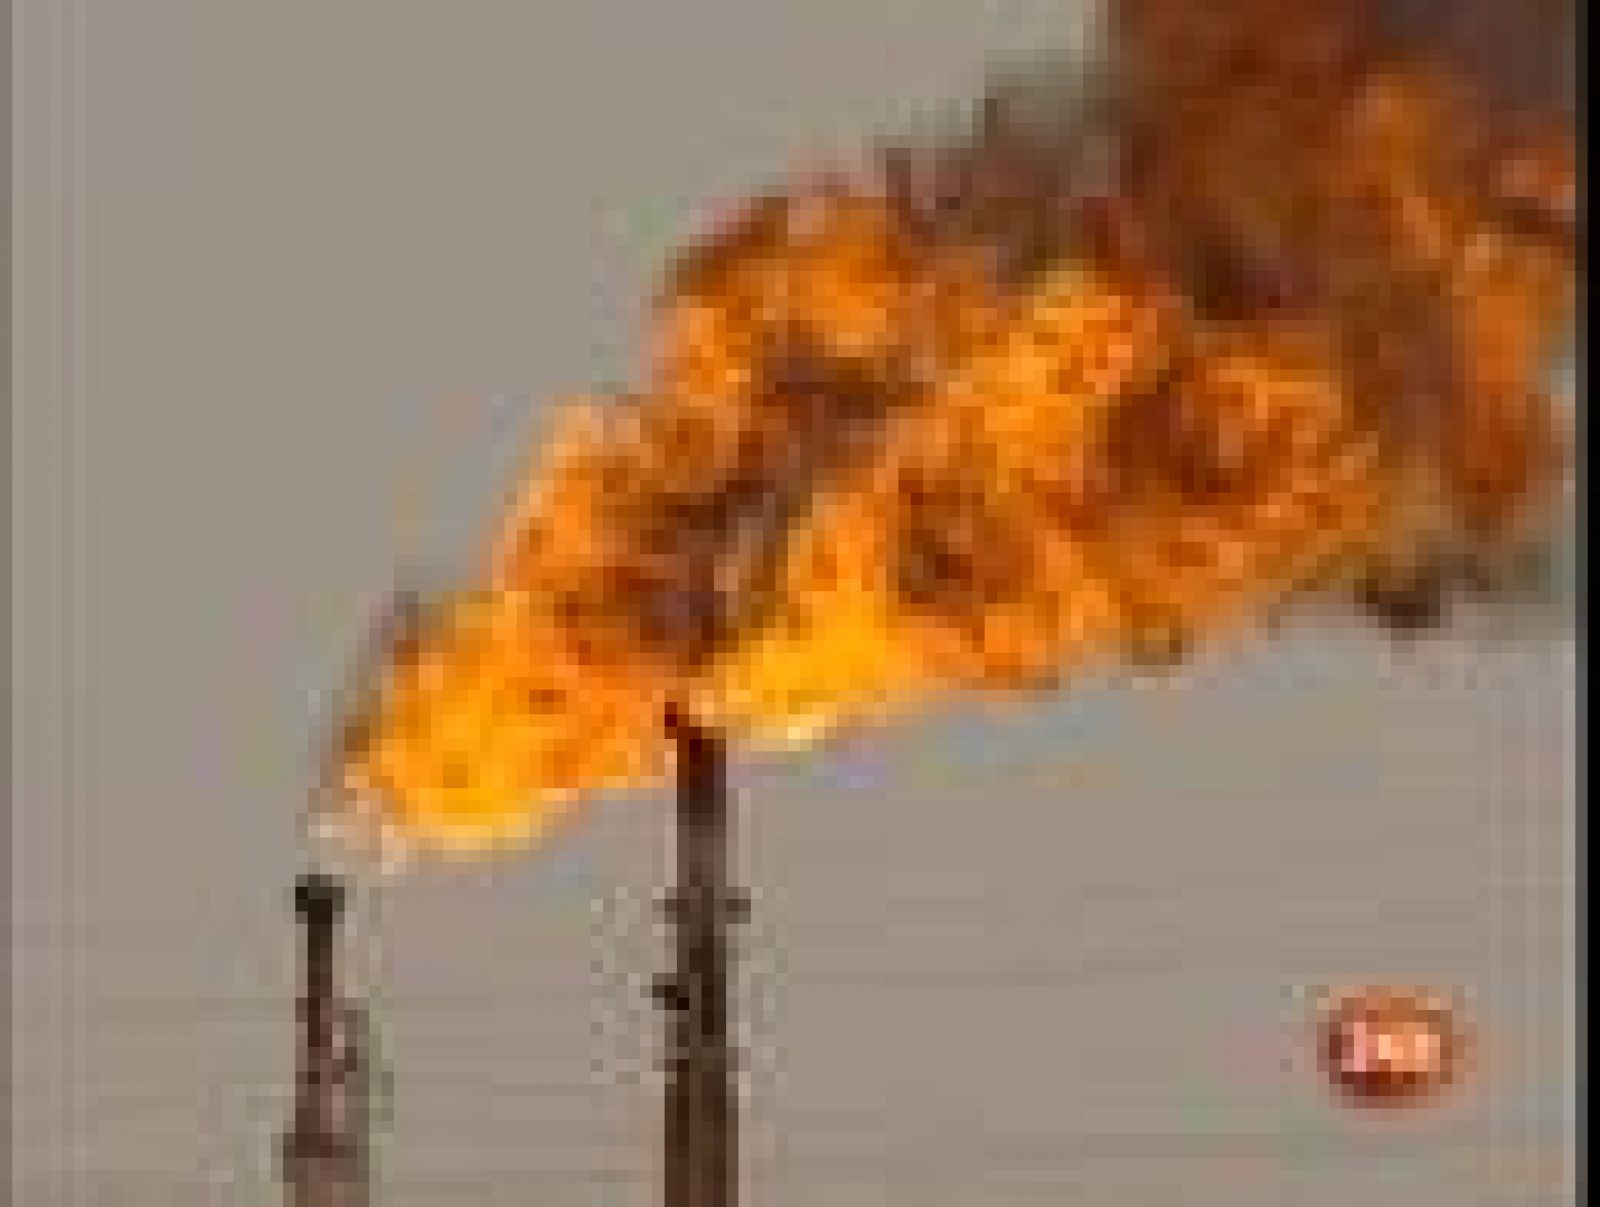  La Opep prepara un recorte en su producción de petróleo